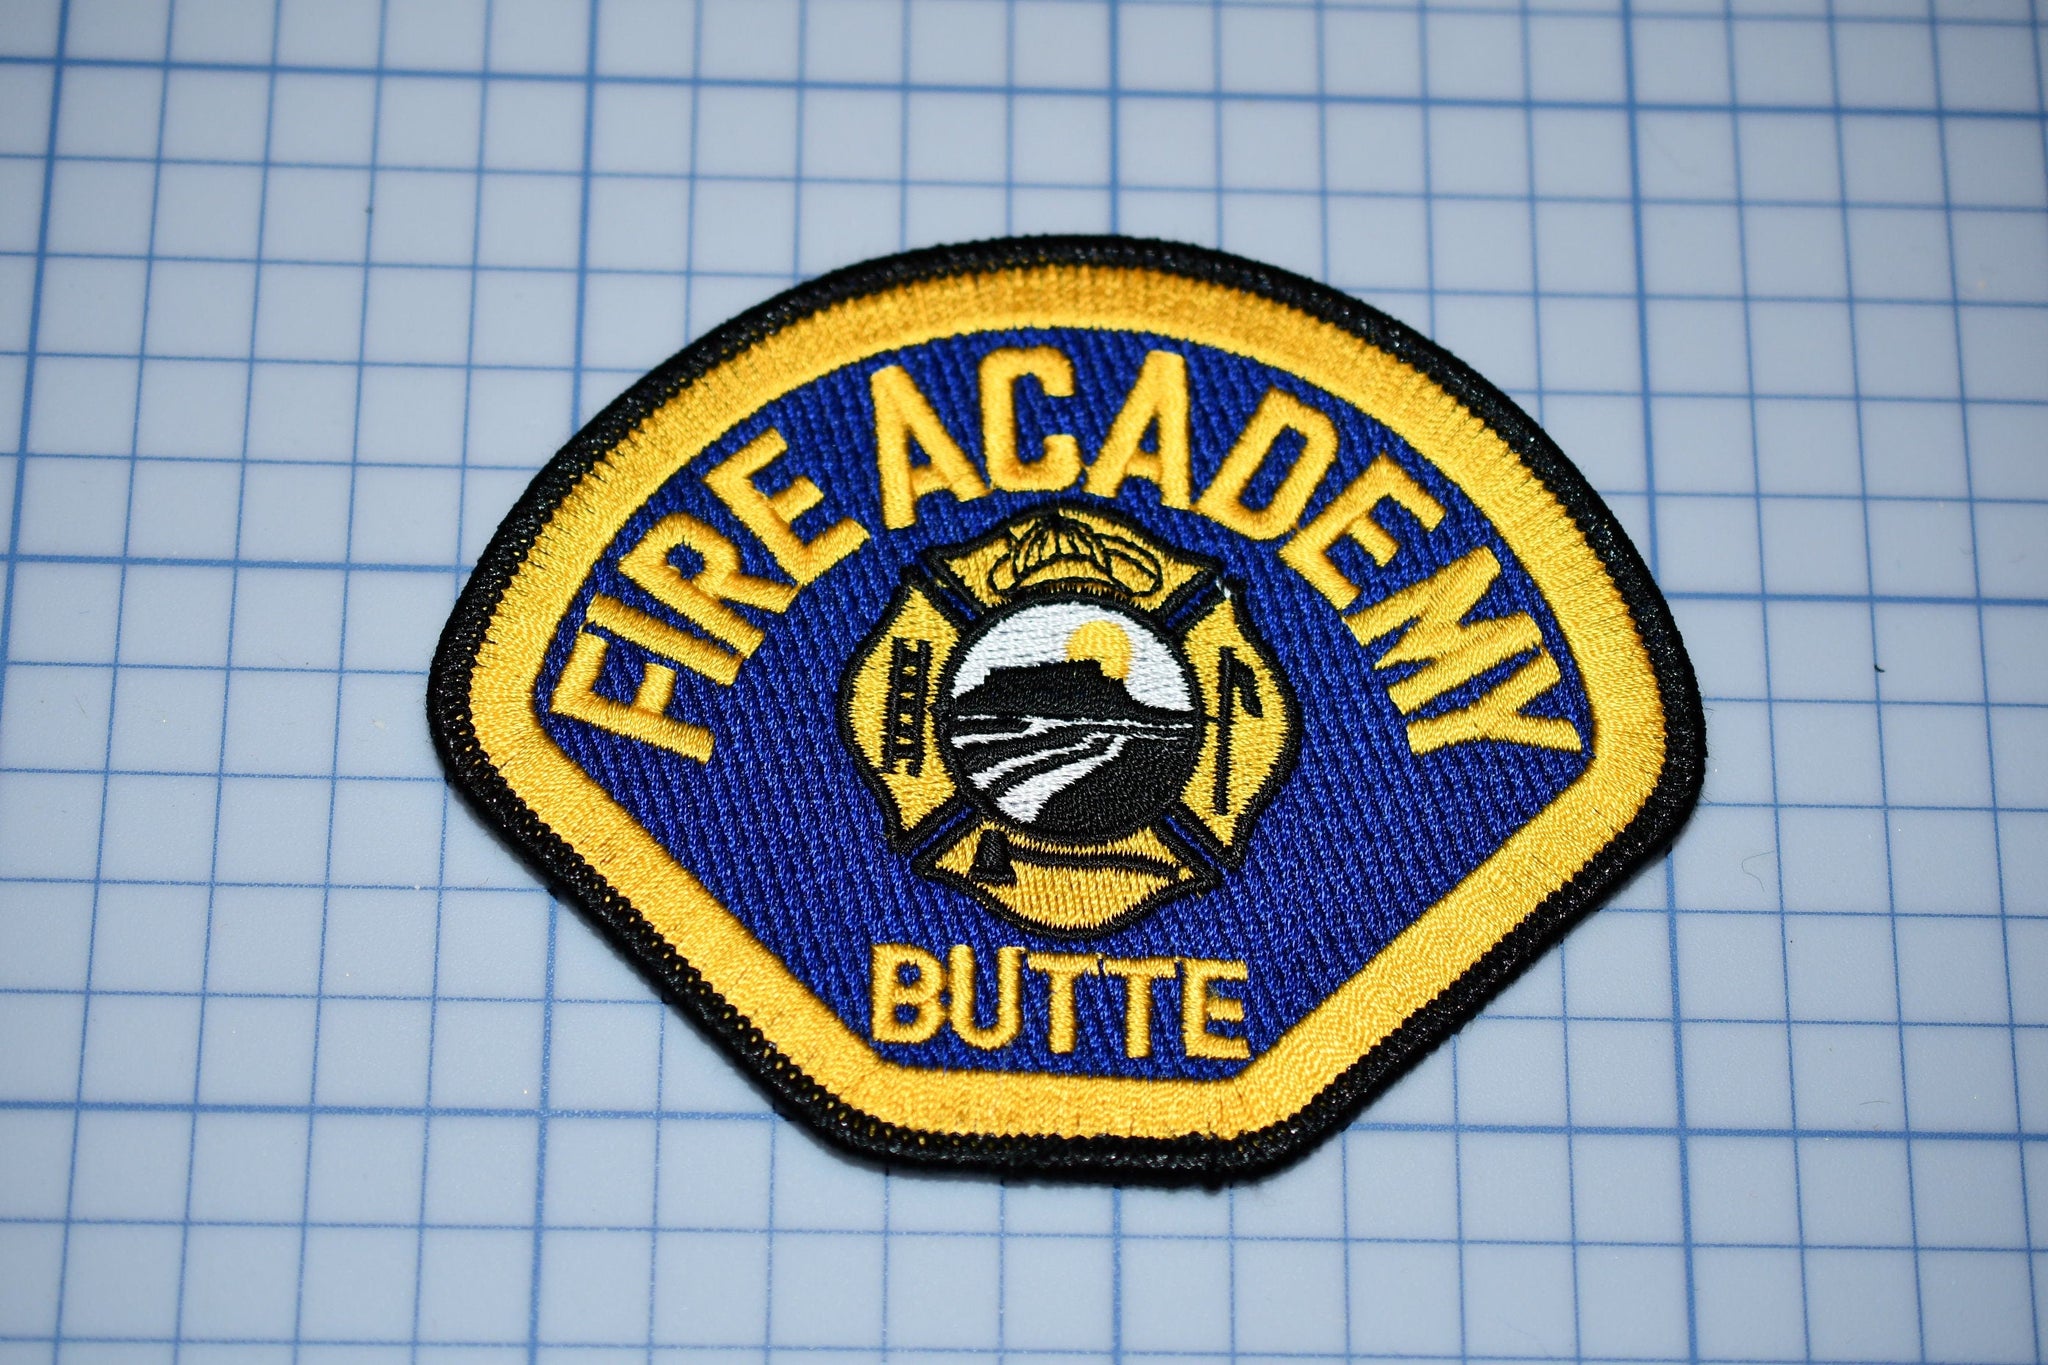 Butte California Fire Academy Patch (B24)